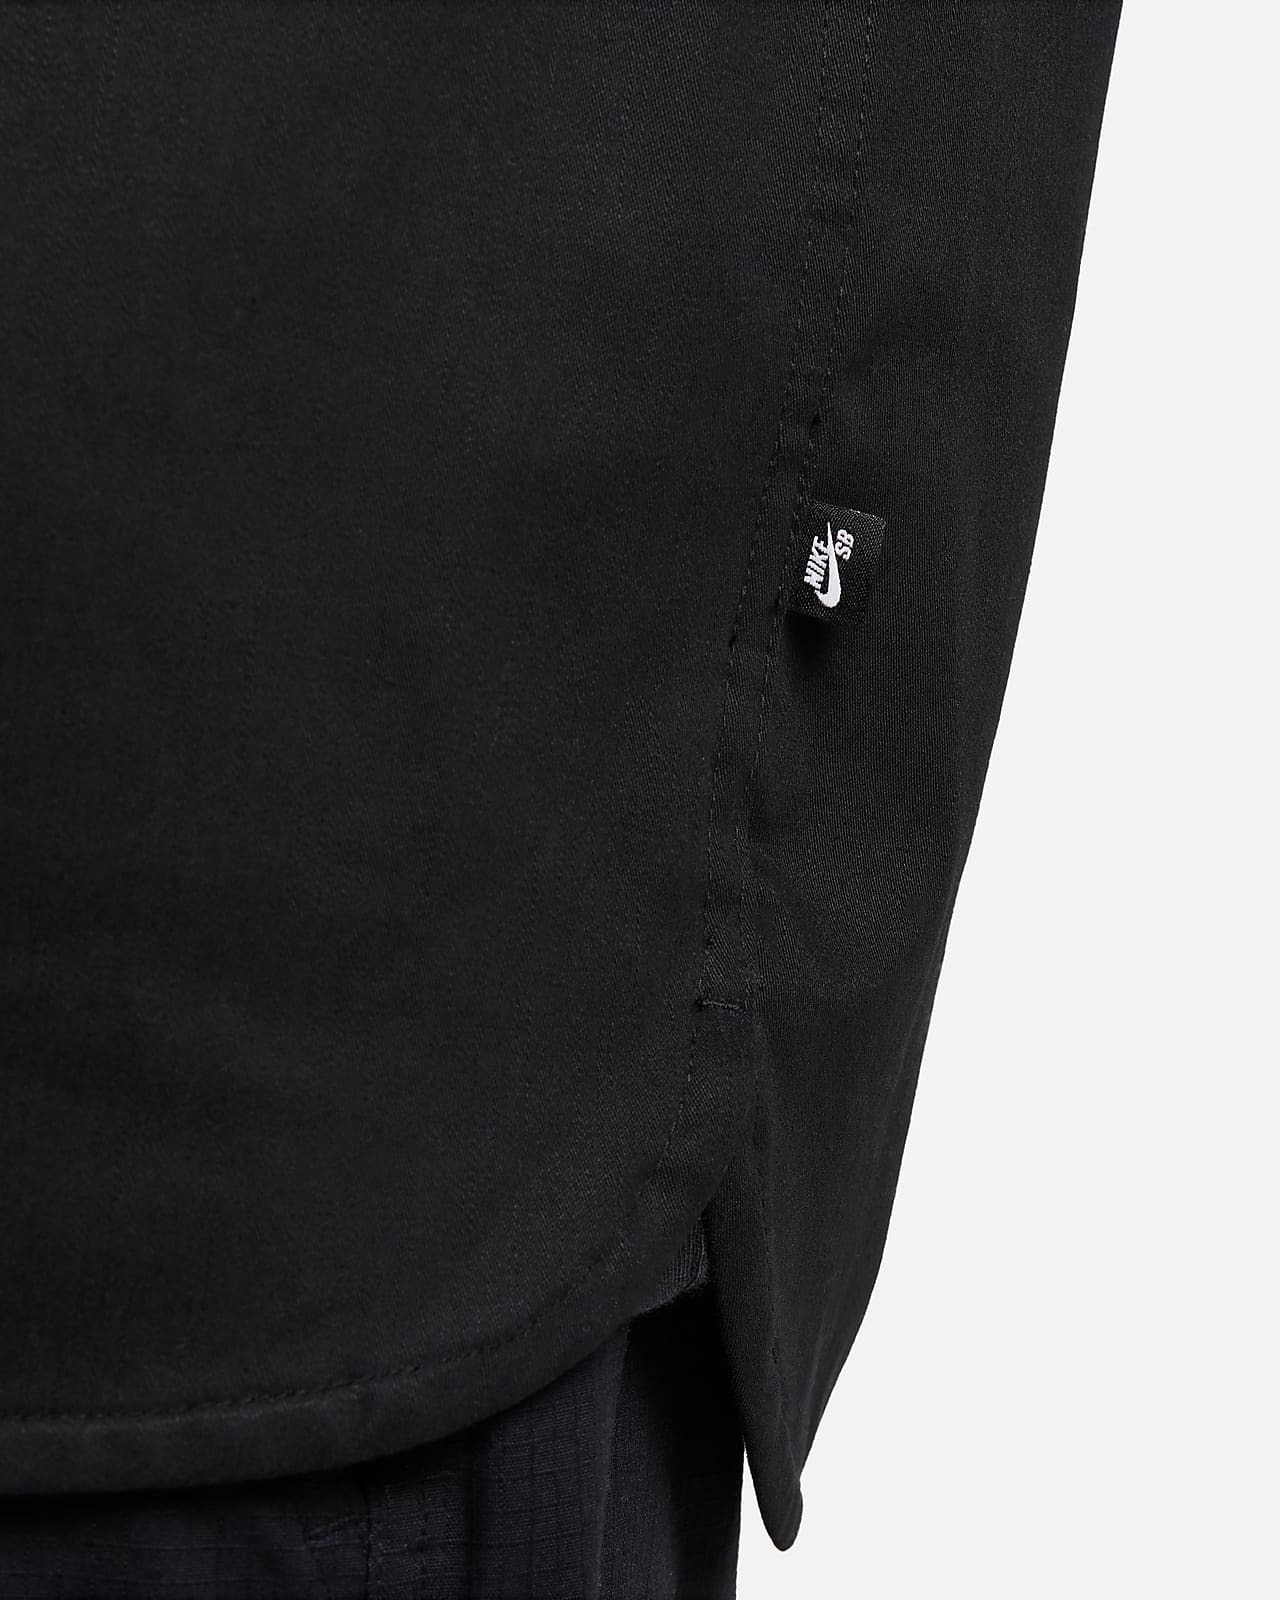 Nike SB Tanglin Woven Skate Button-Up Long-SleeveTop.